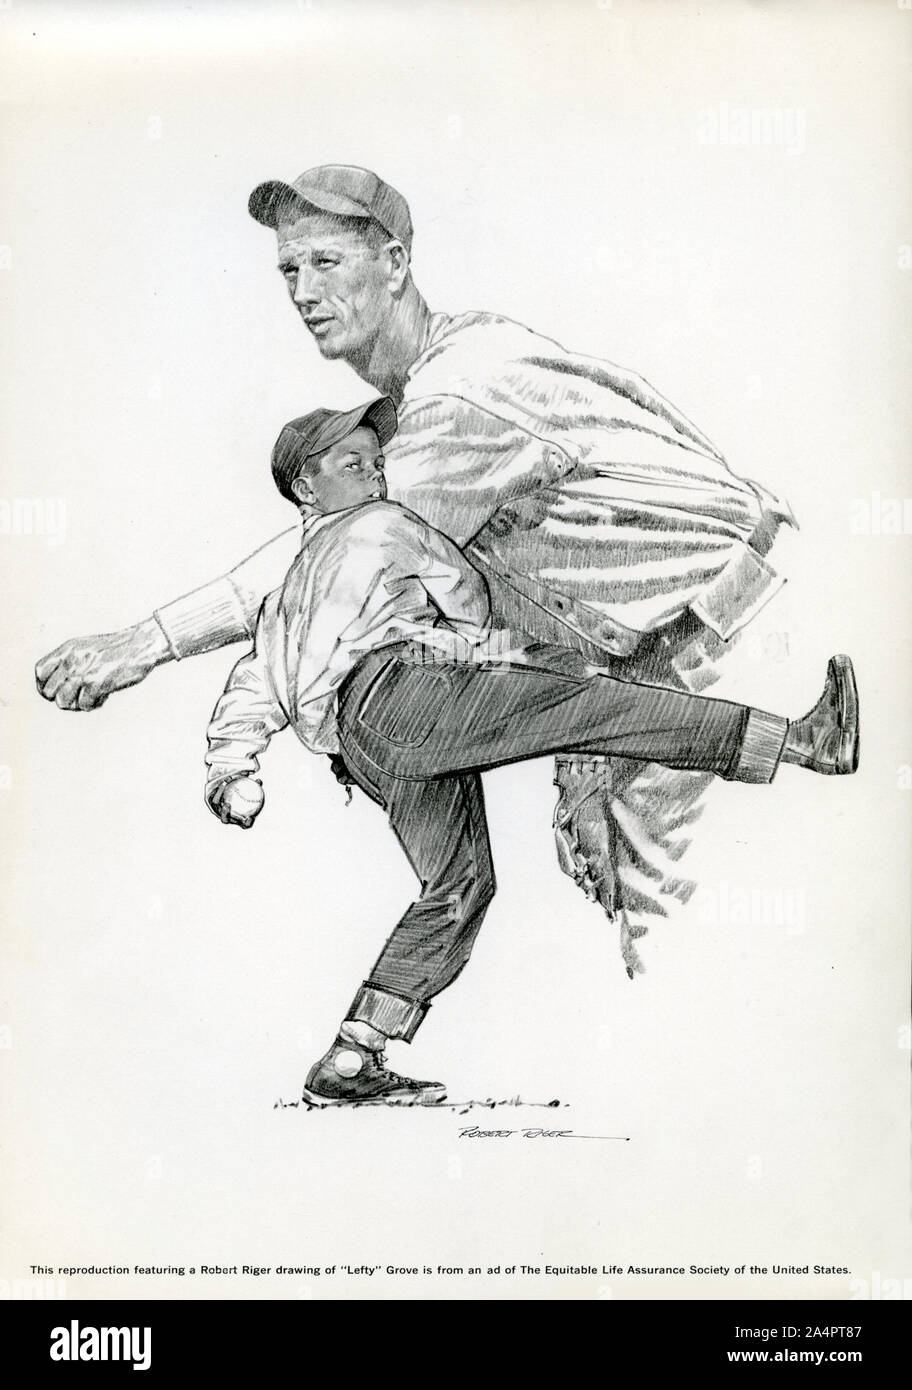 Dibujo de baseball legendario lanzador Lefty Grove por Robert Rieger Foto de stock